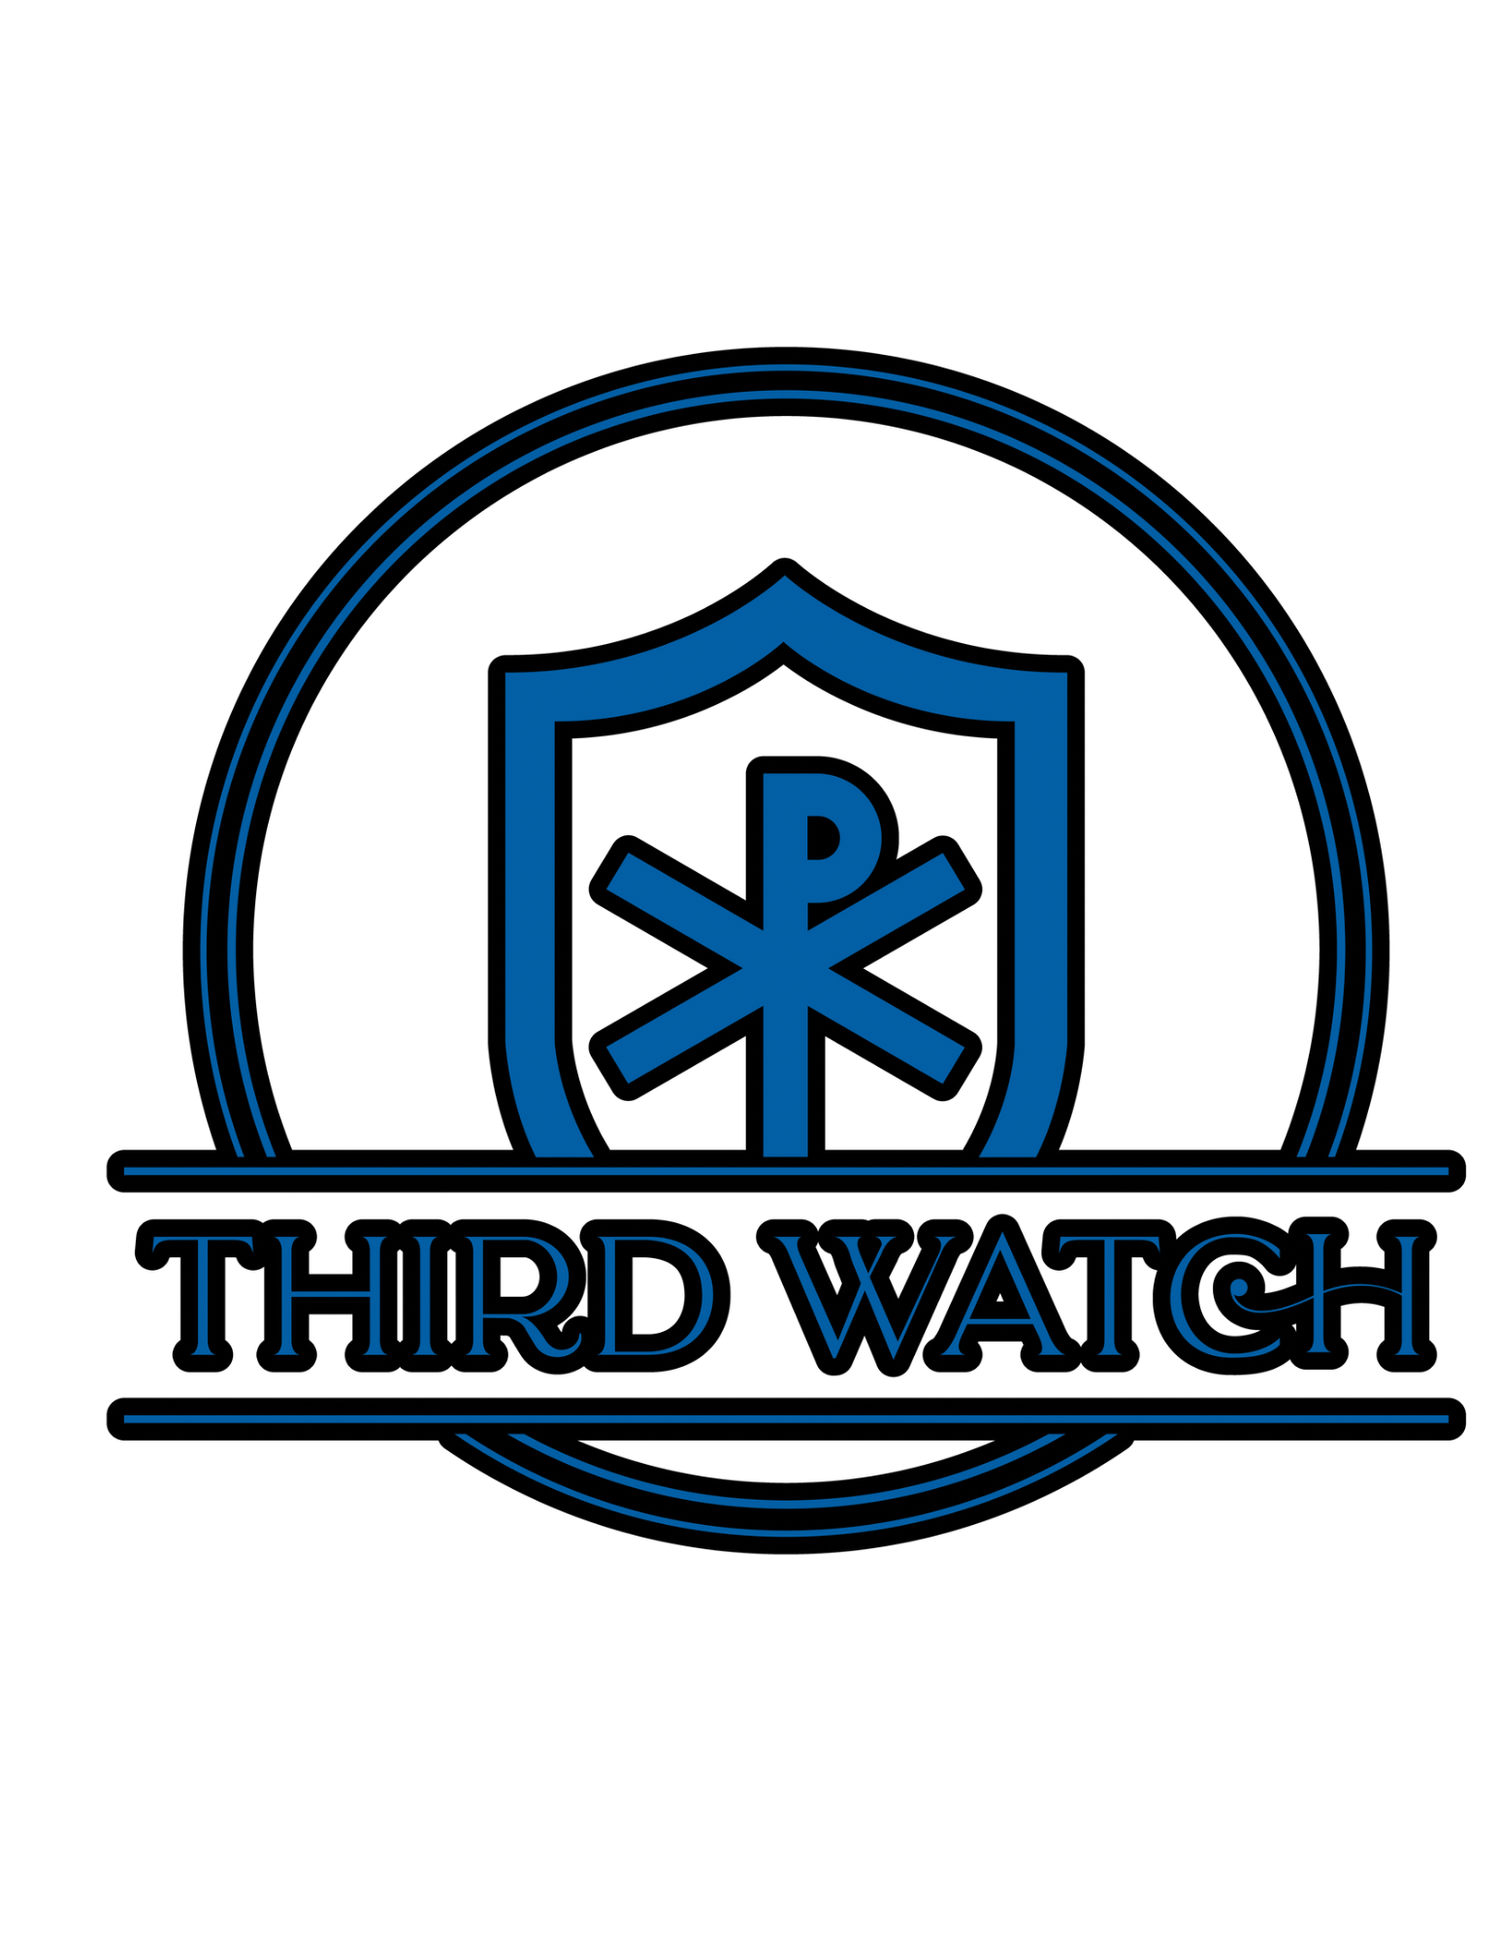 THIRD WATCH LLC